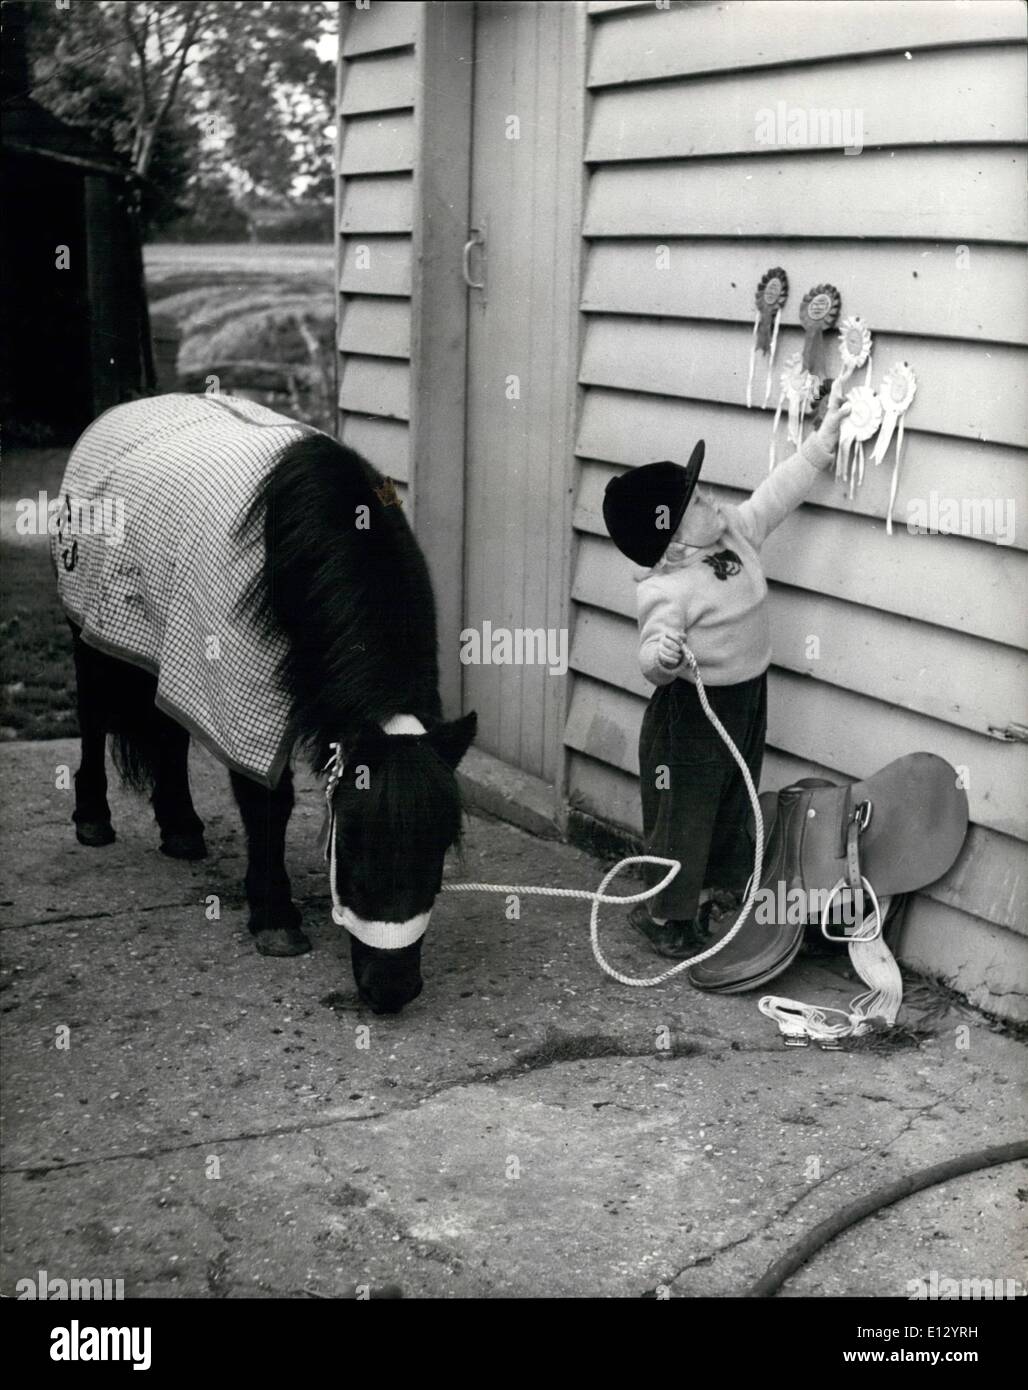 El 26 de febrero de 2012 - La pequeña de 18 meses de cowgirl, Karen Stock, muestra sus cintas y mantiene la cuerda a su pony Shotland Johnny. Foto de stock